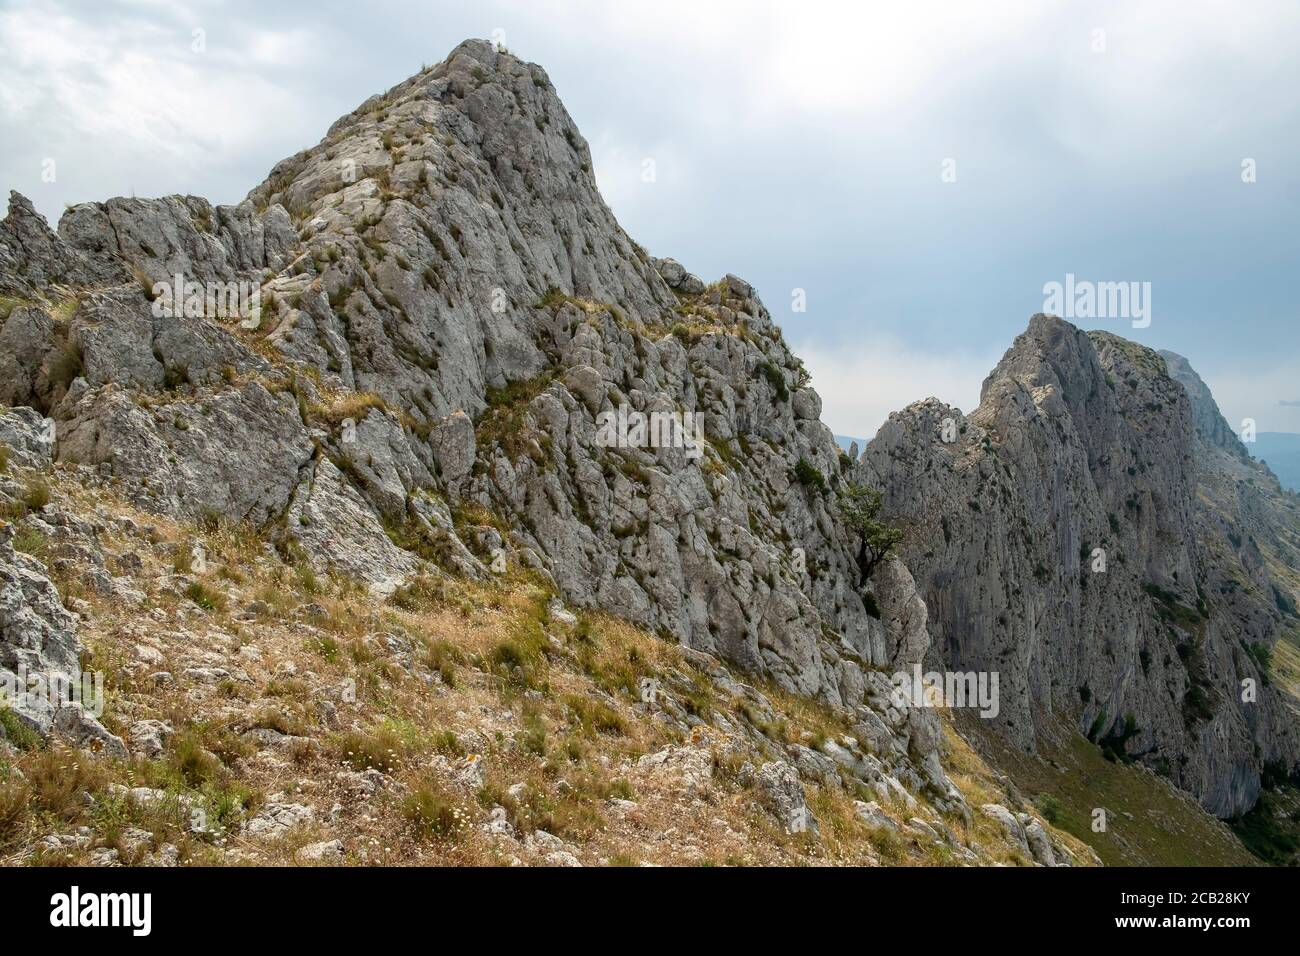 Cordillera de Bernia una de las montañas más alpinas de la provincia de Alicante (1,128 msn), provincia de Alicante, Costa Blanca, España Foto de stock